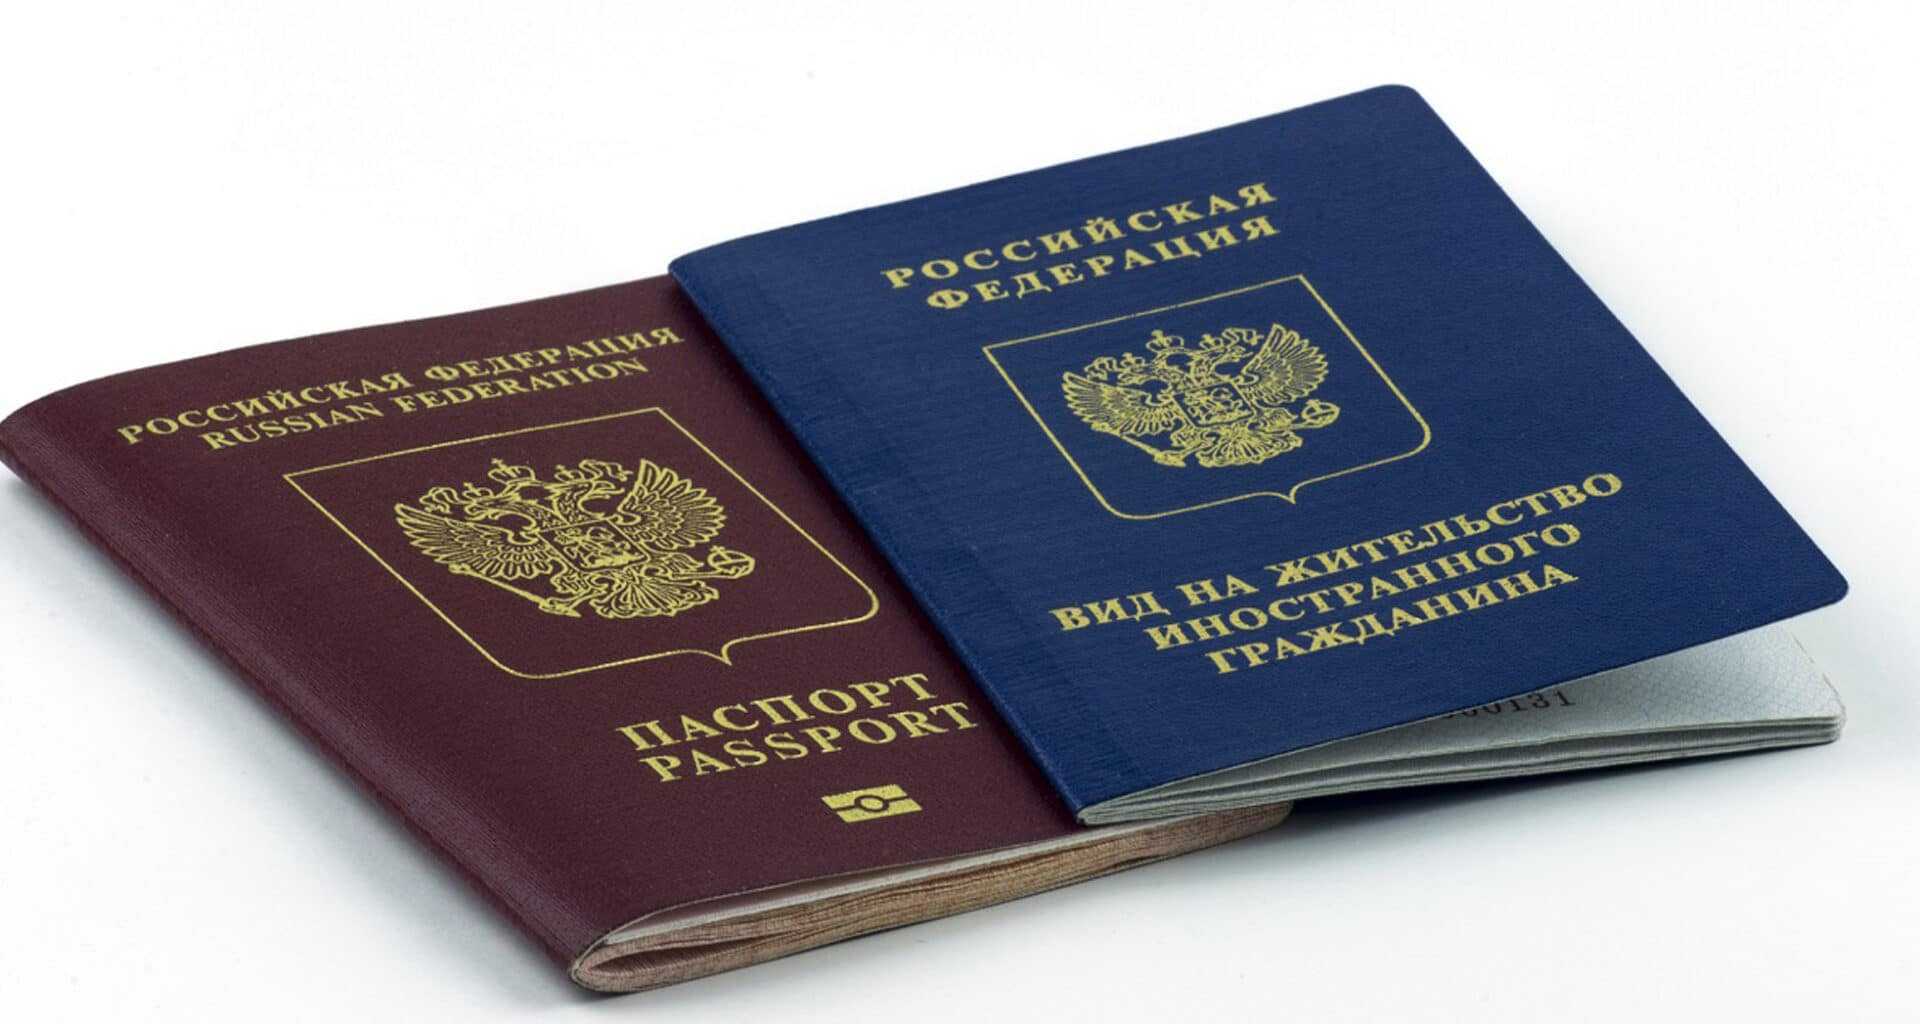 Иммиграция в уругвай из россии: плюсы и минусы переезда на пмж, можно ли получить гражданство
иммиграция в уругвай из россии: плюсы и минусы переезда на пмж, можно ли получить гражданство